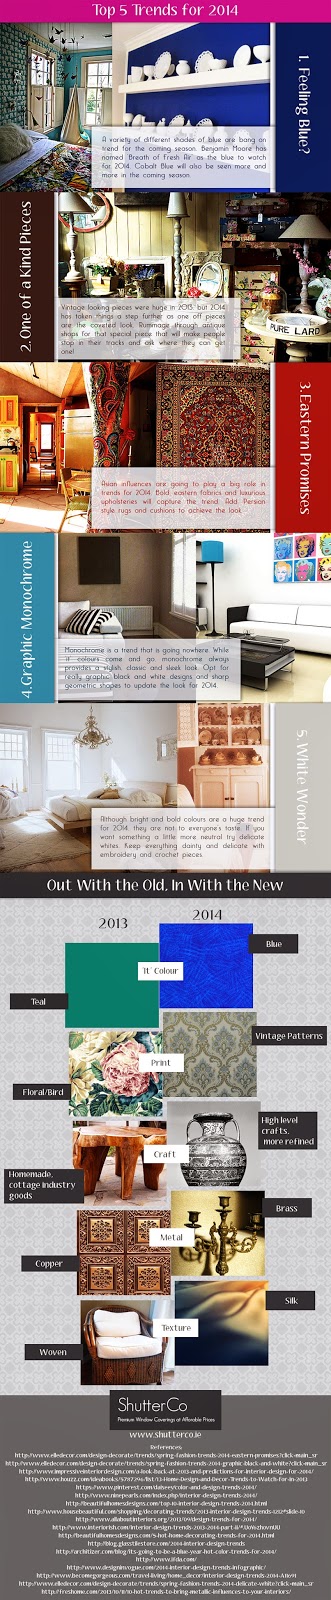 Interior Design Trends 2014